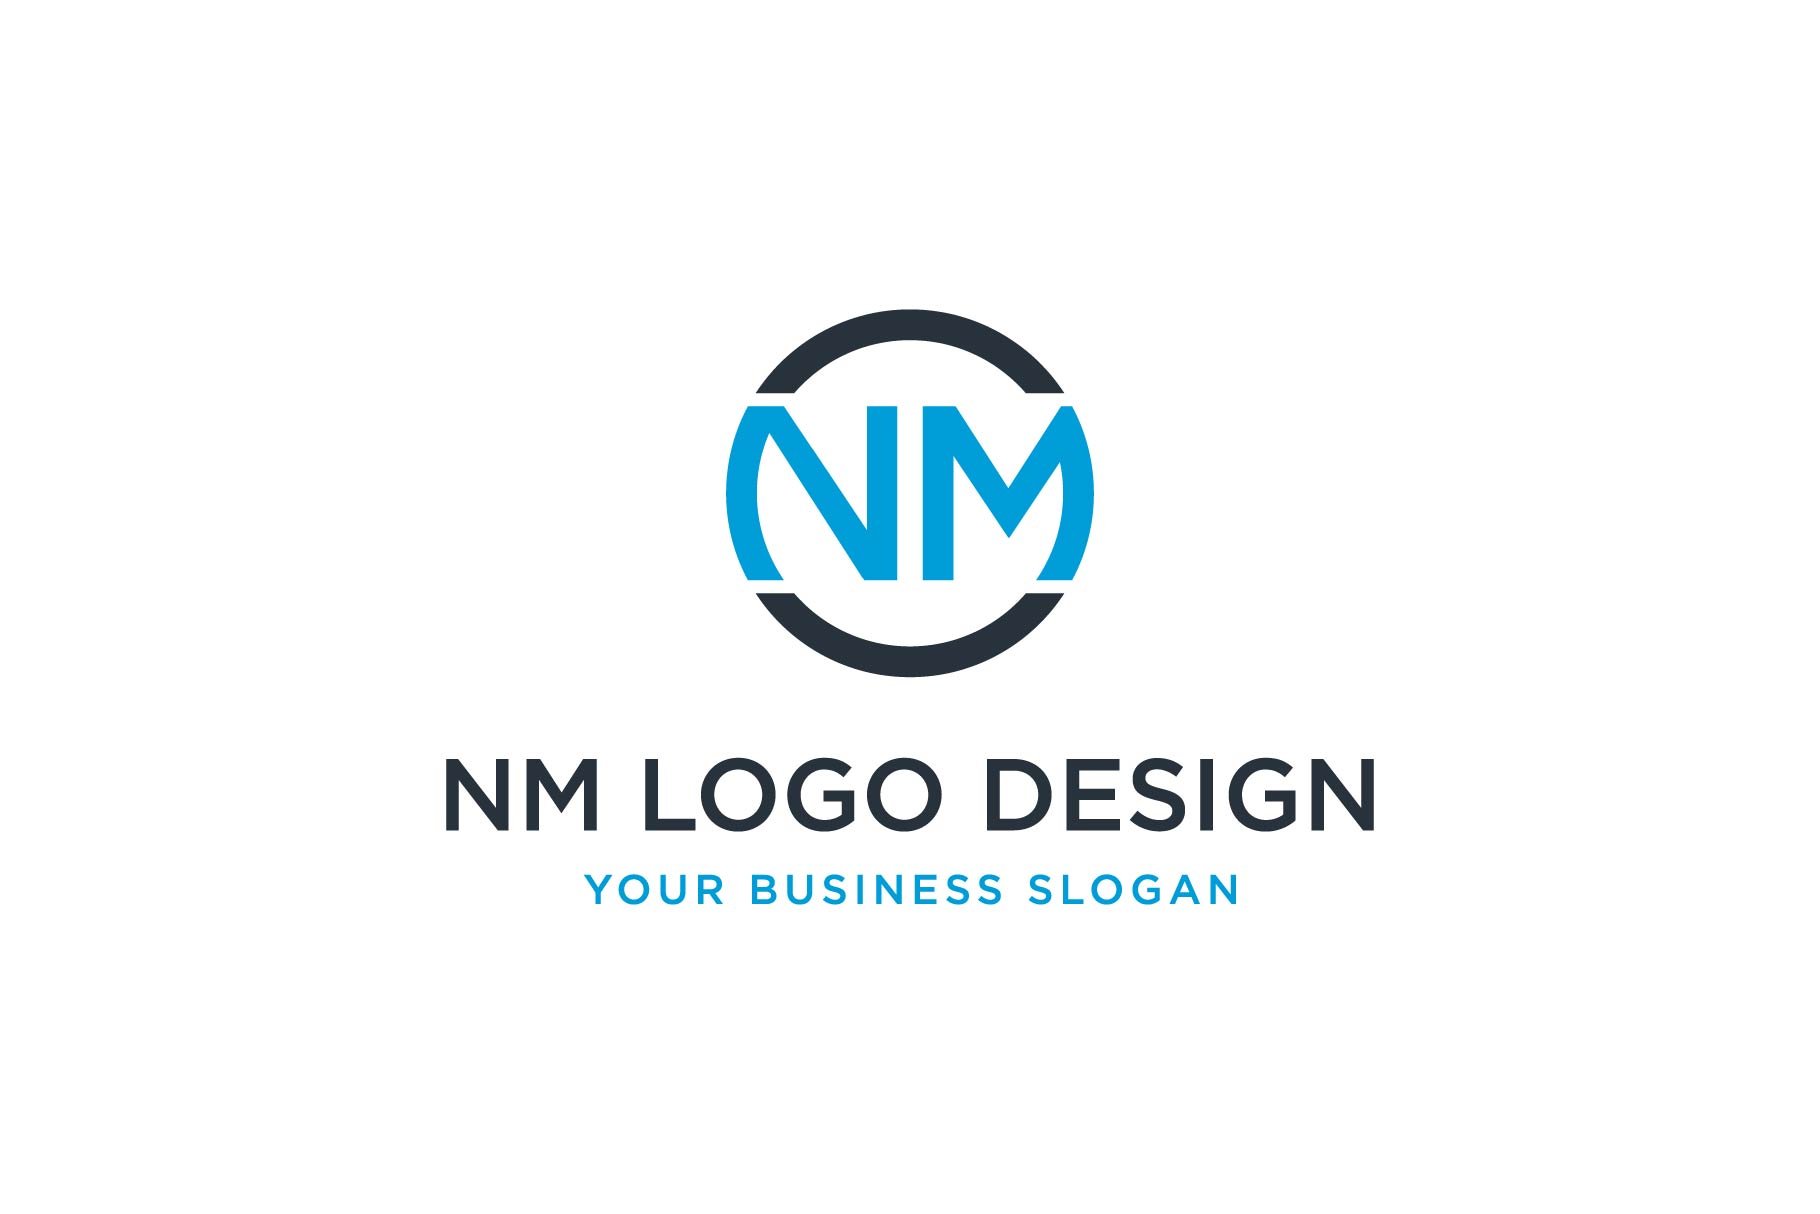 Premium Vector | Nm logo design vector image